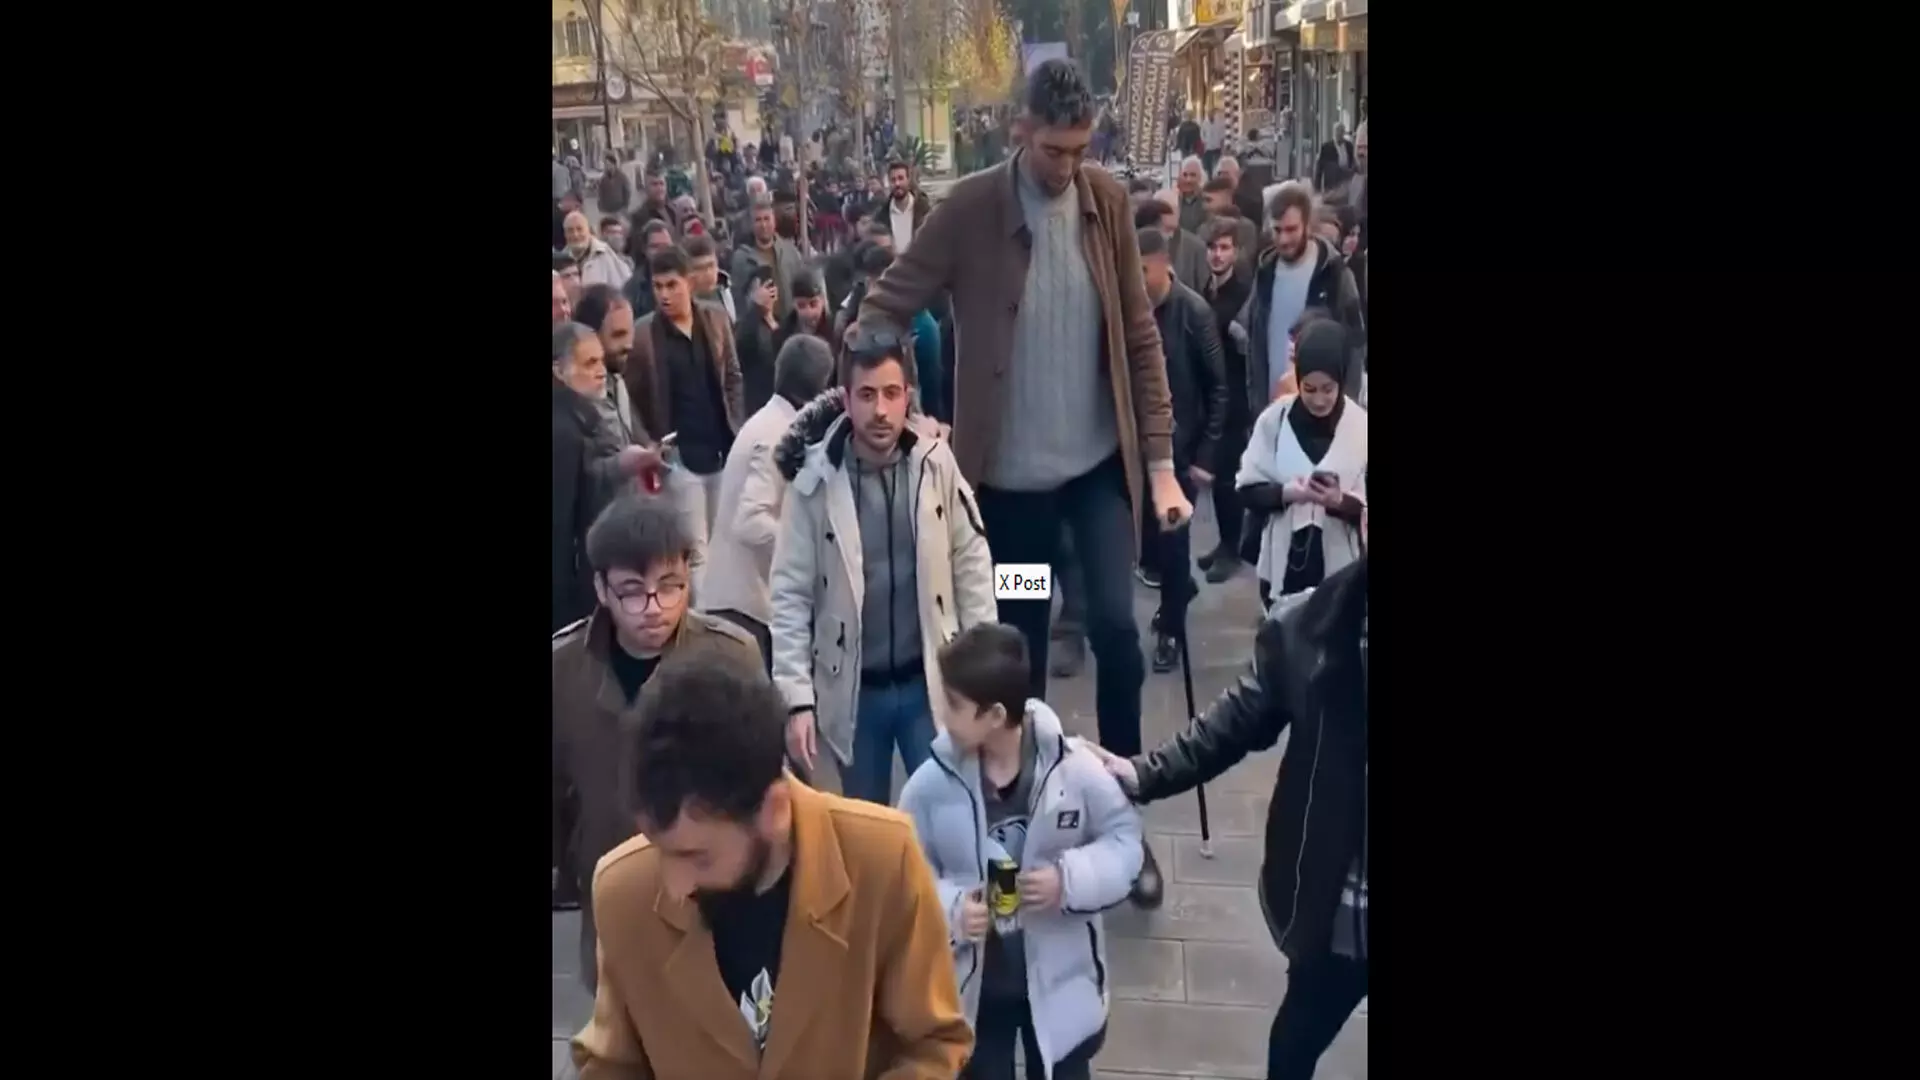 तुर्की की सड़कों पर घूम रहे सबसे लम्बे आदमी का वीडियो वायरल